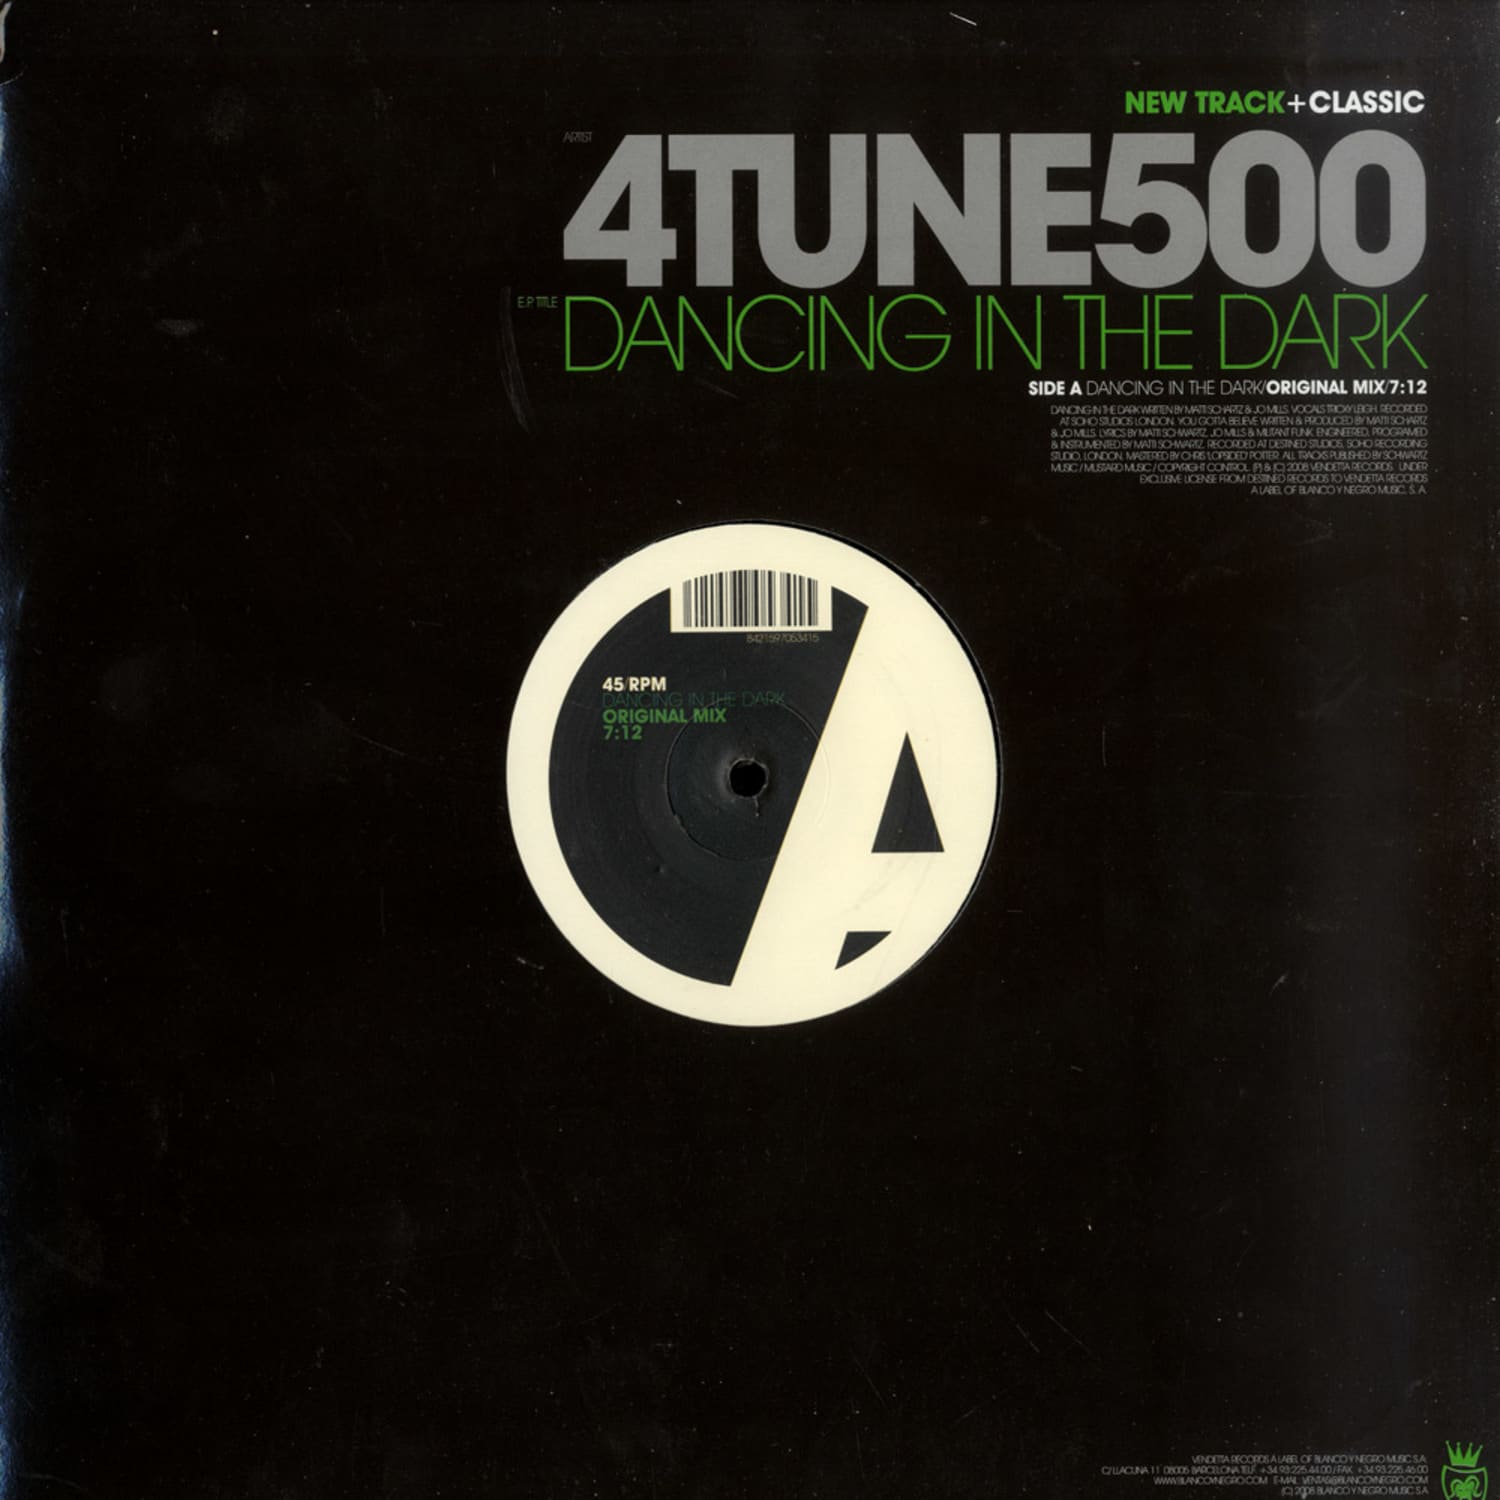 4Tune500 - DANCING IN THE DARK / YOU GOTTA BELIEVE